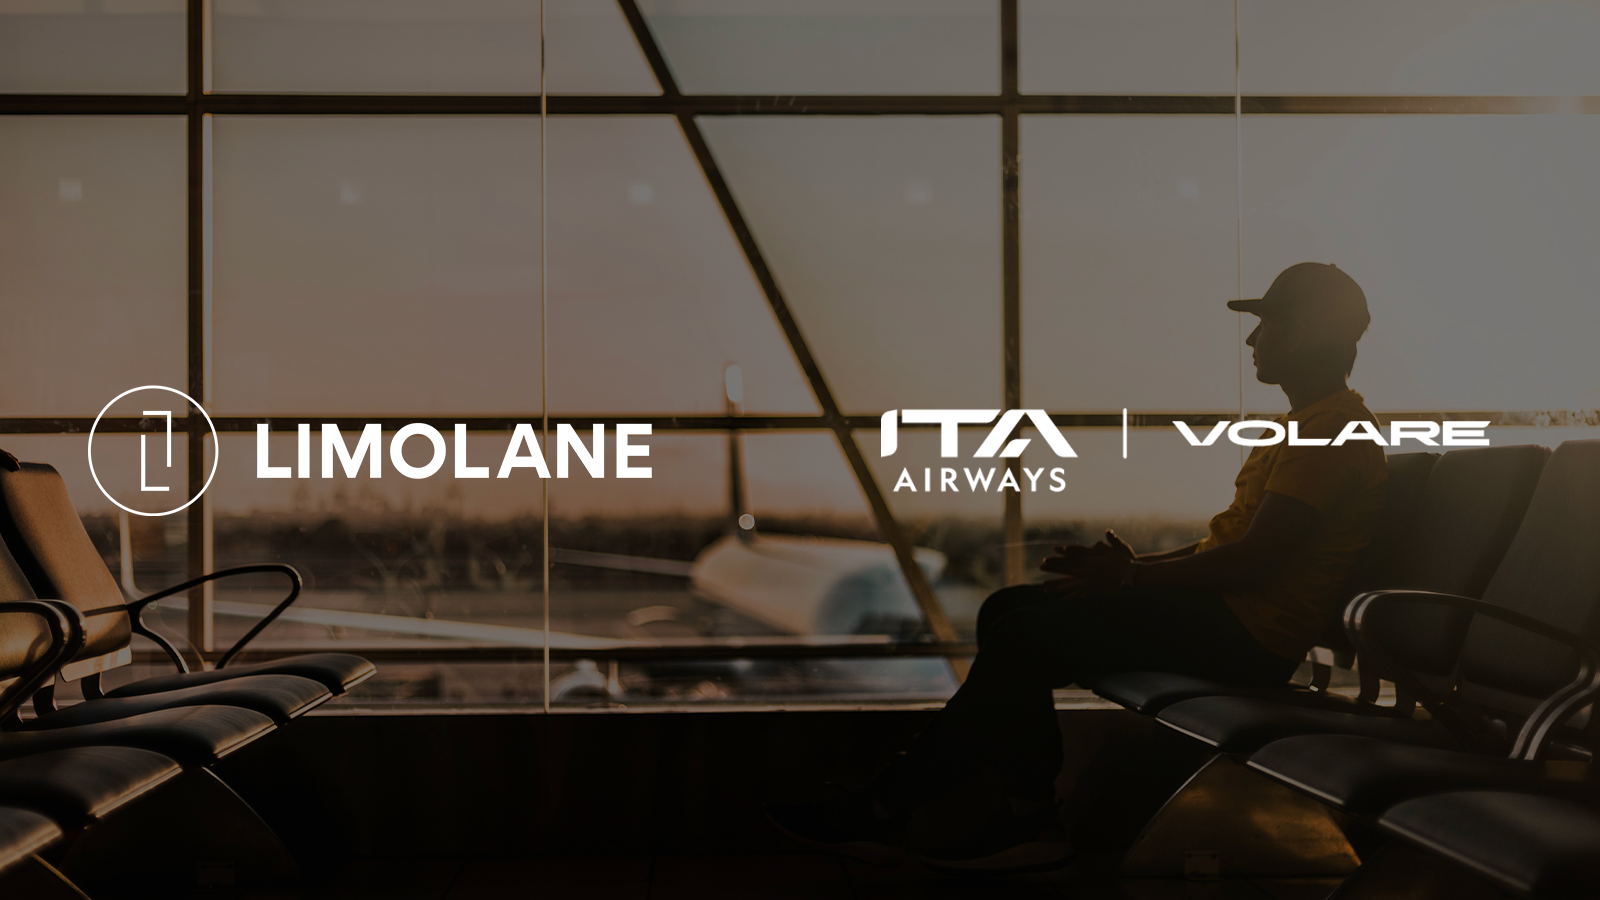 ITA Airways accordo con LimoLane per il servizio di mobilità del programma Volare